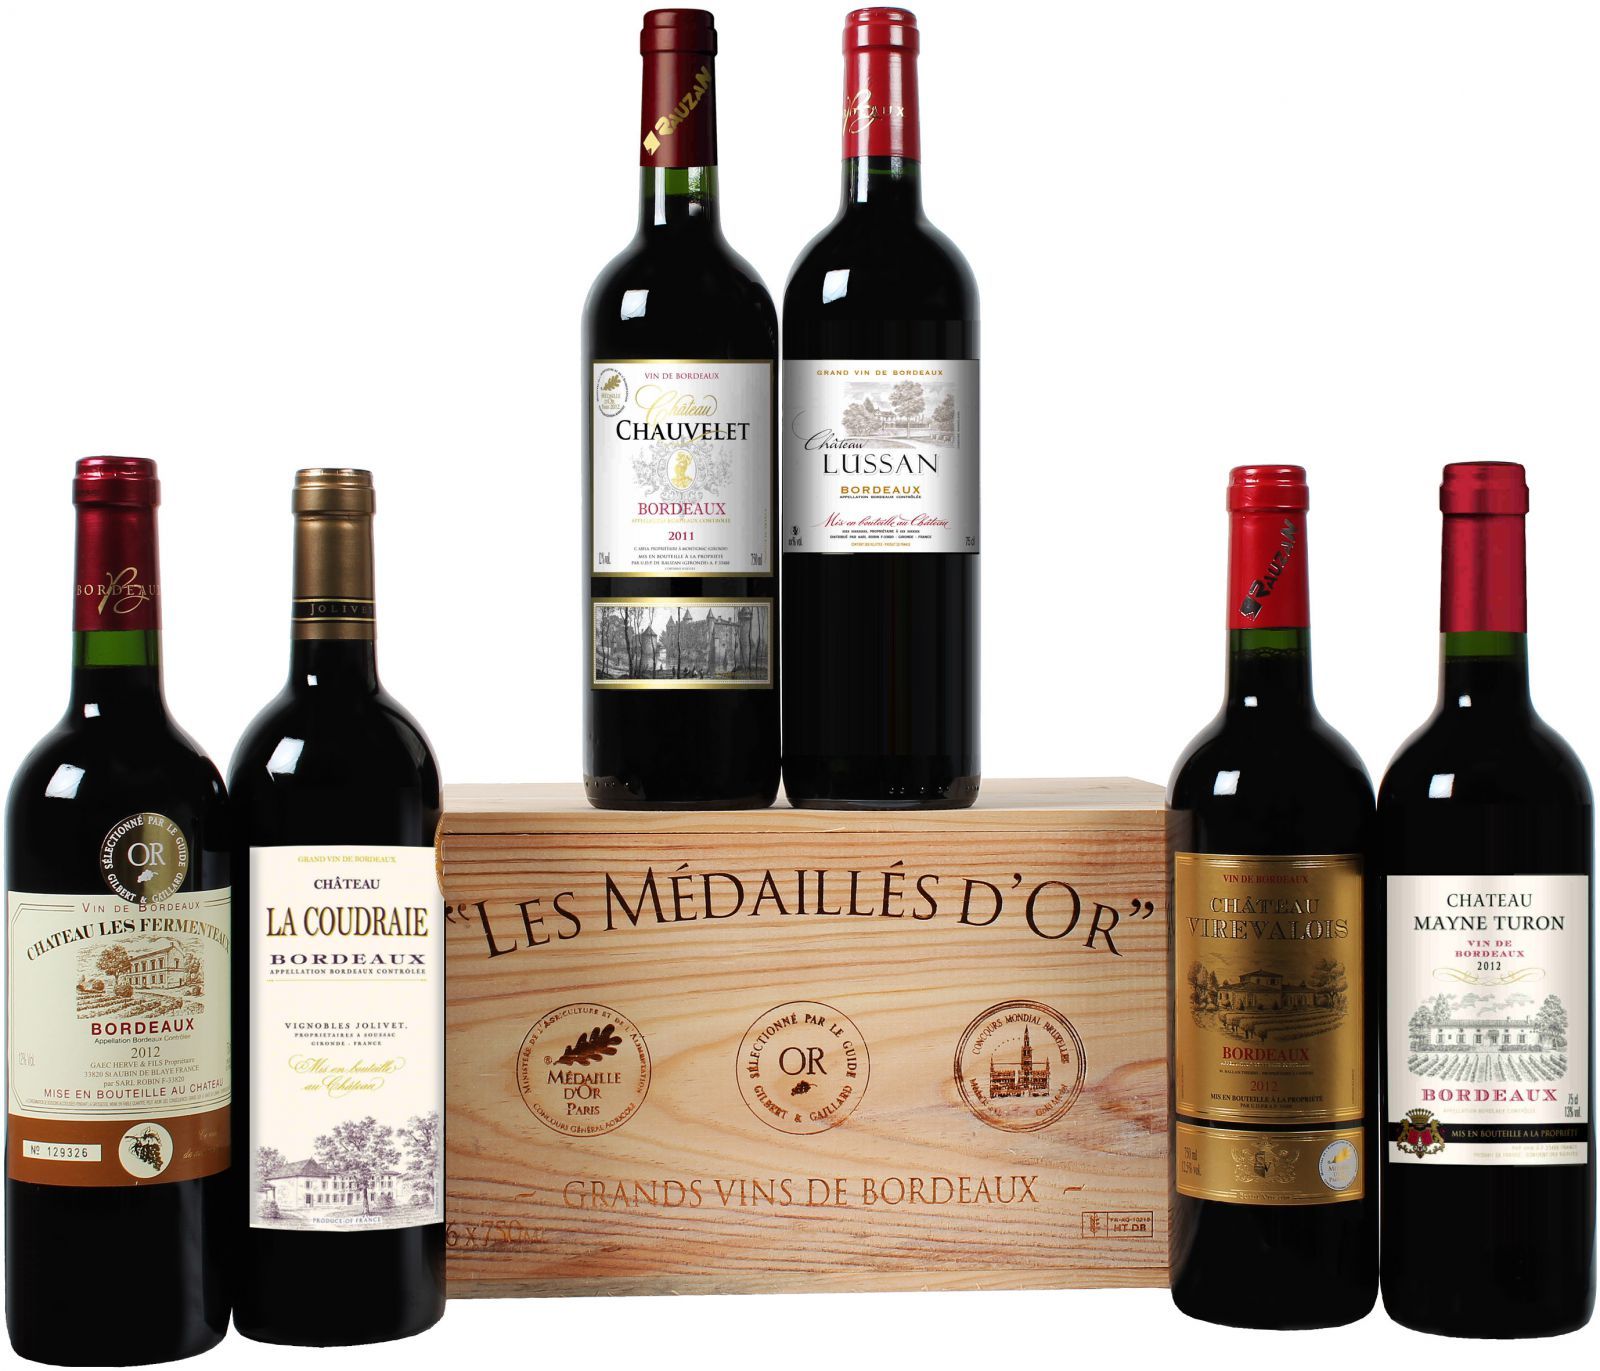 Goldprämierte Bordeaux-Selektion in edler Holzkiste mit 6 Flaschen Rotwein nur 39,99 Euro* statt 99,00 Euro